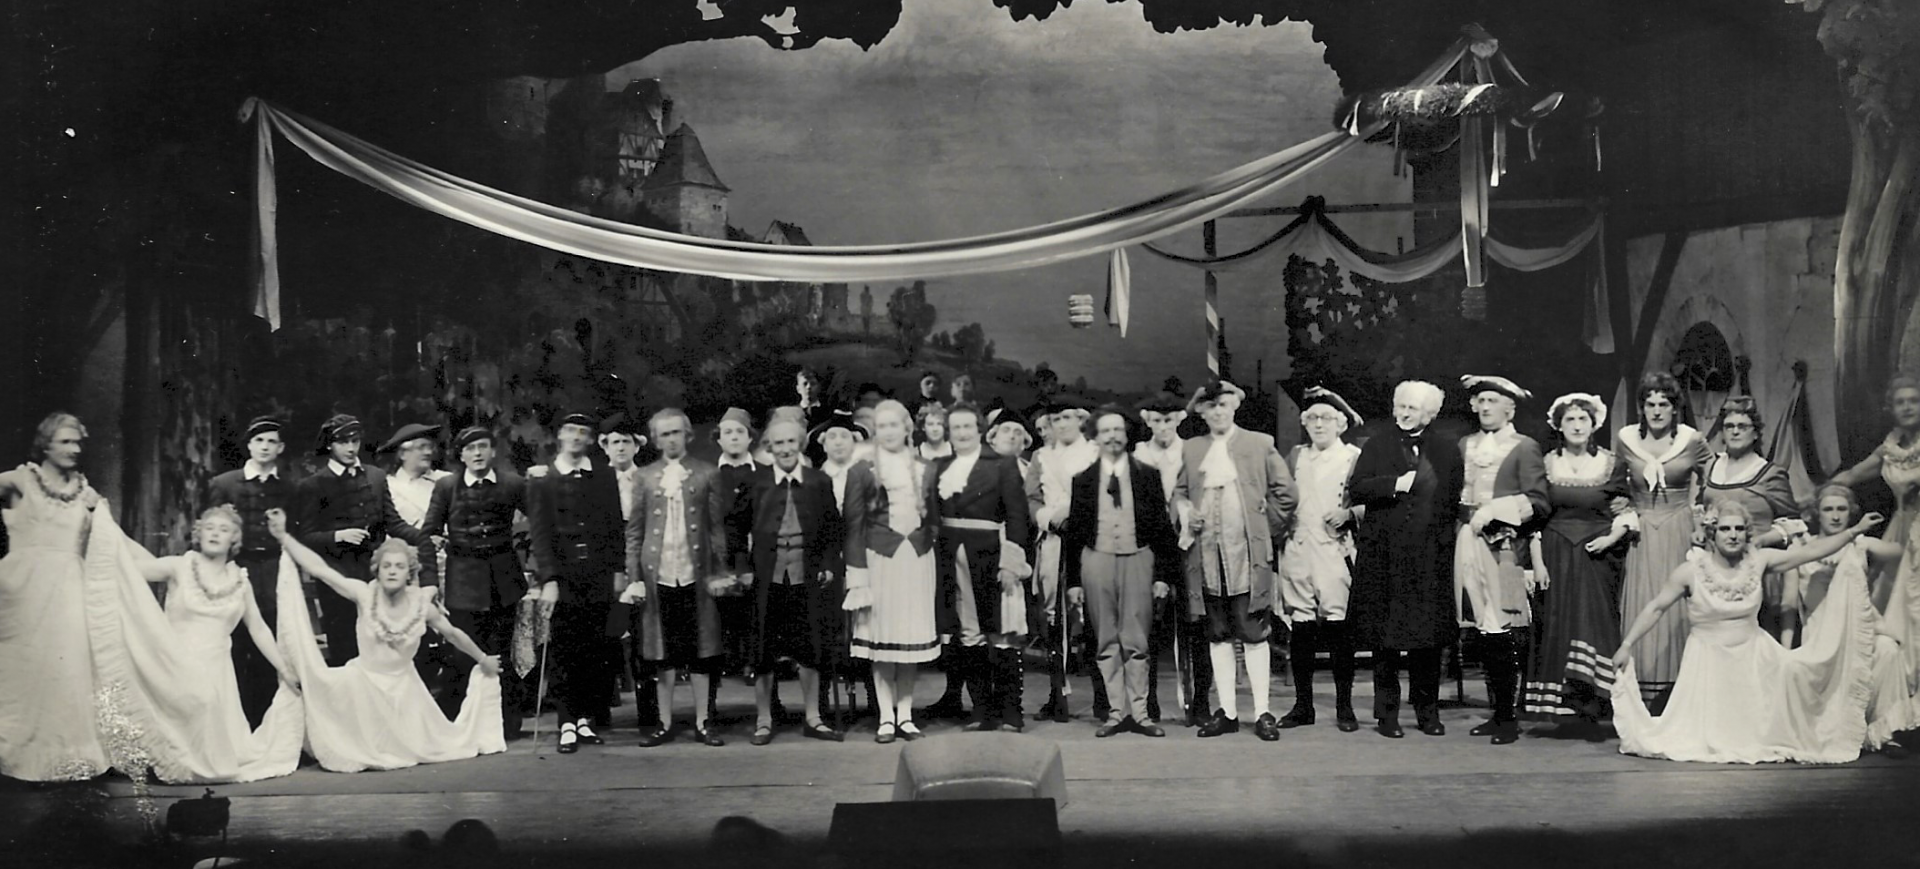 Funkemarieche - Divertissementchen 1951 - Schlussbild mit Chor und Ballett